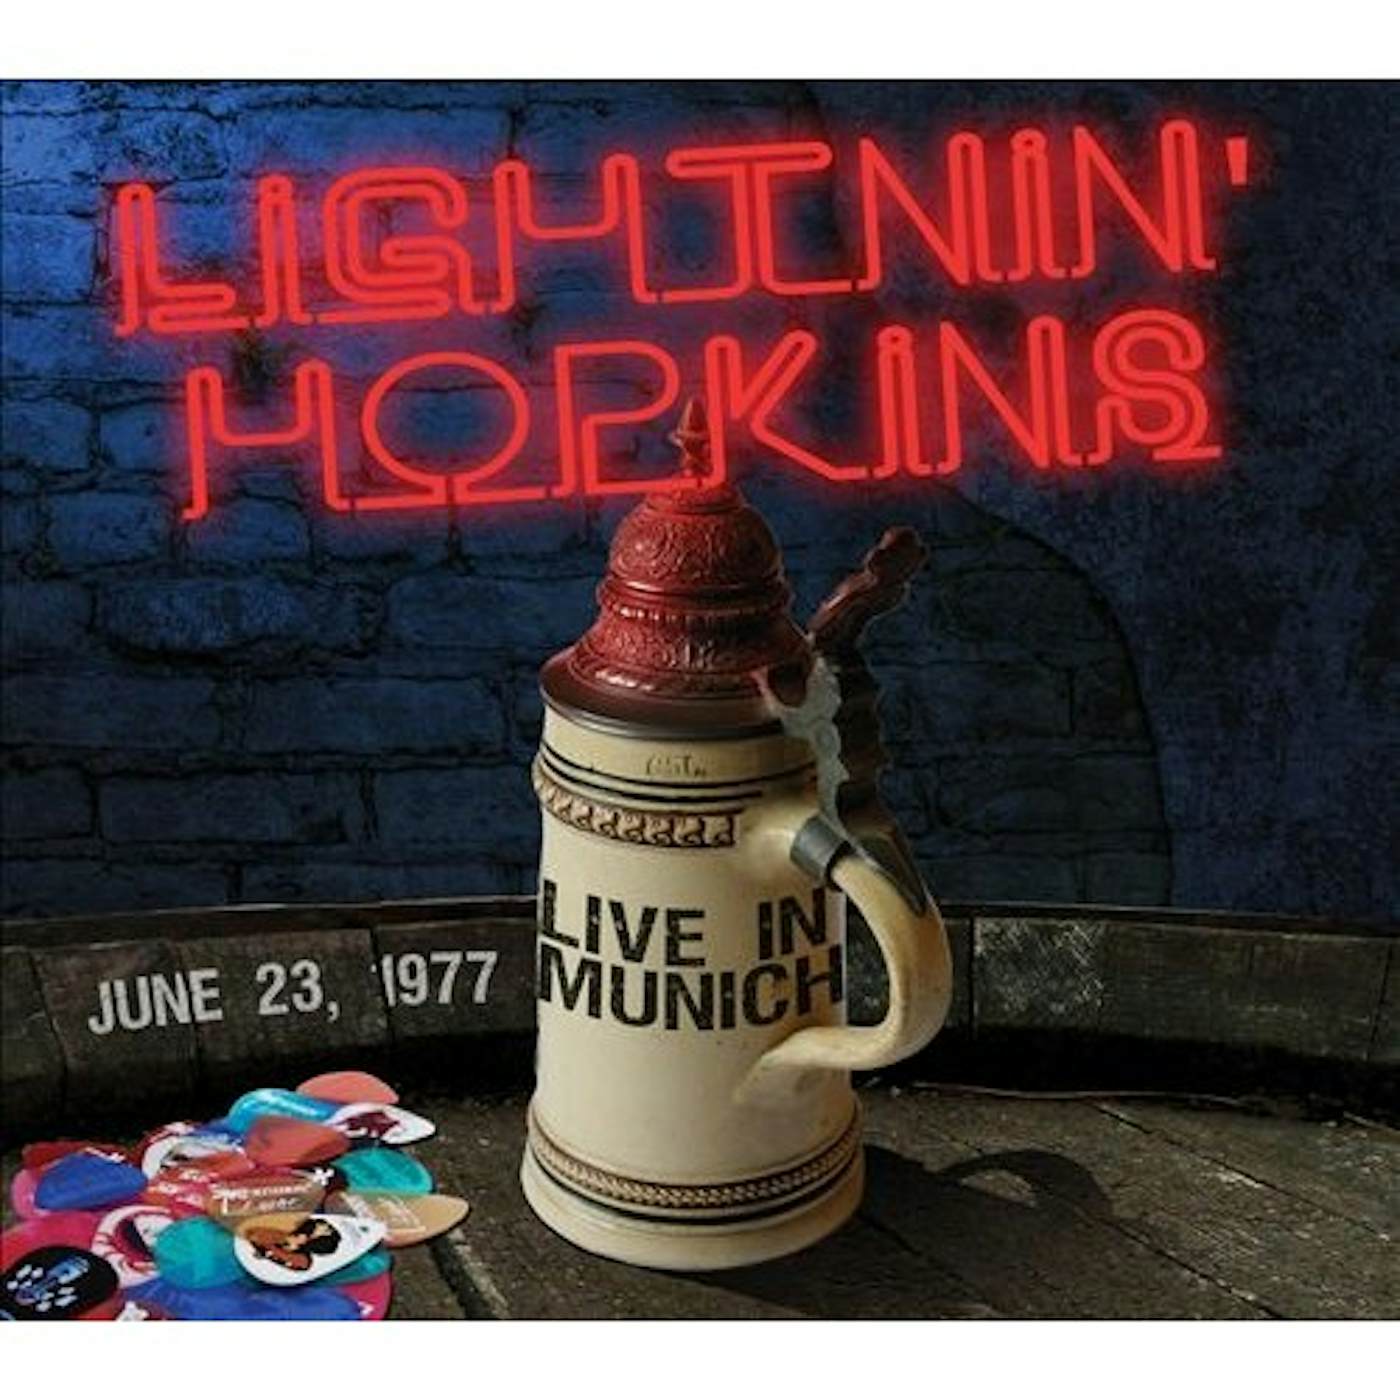 Lightnin' Hopkins BLUES IN MUNICH 1977 CD